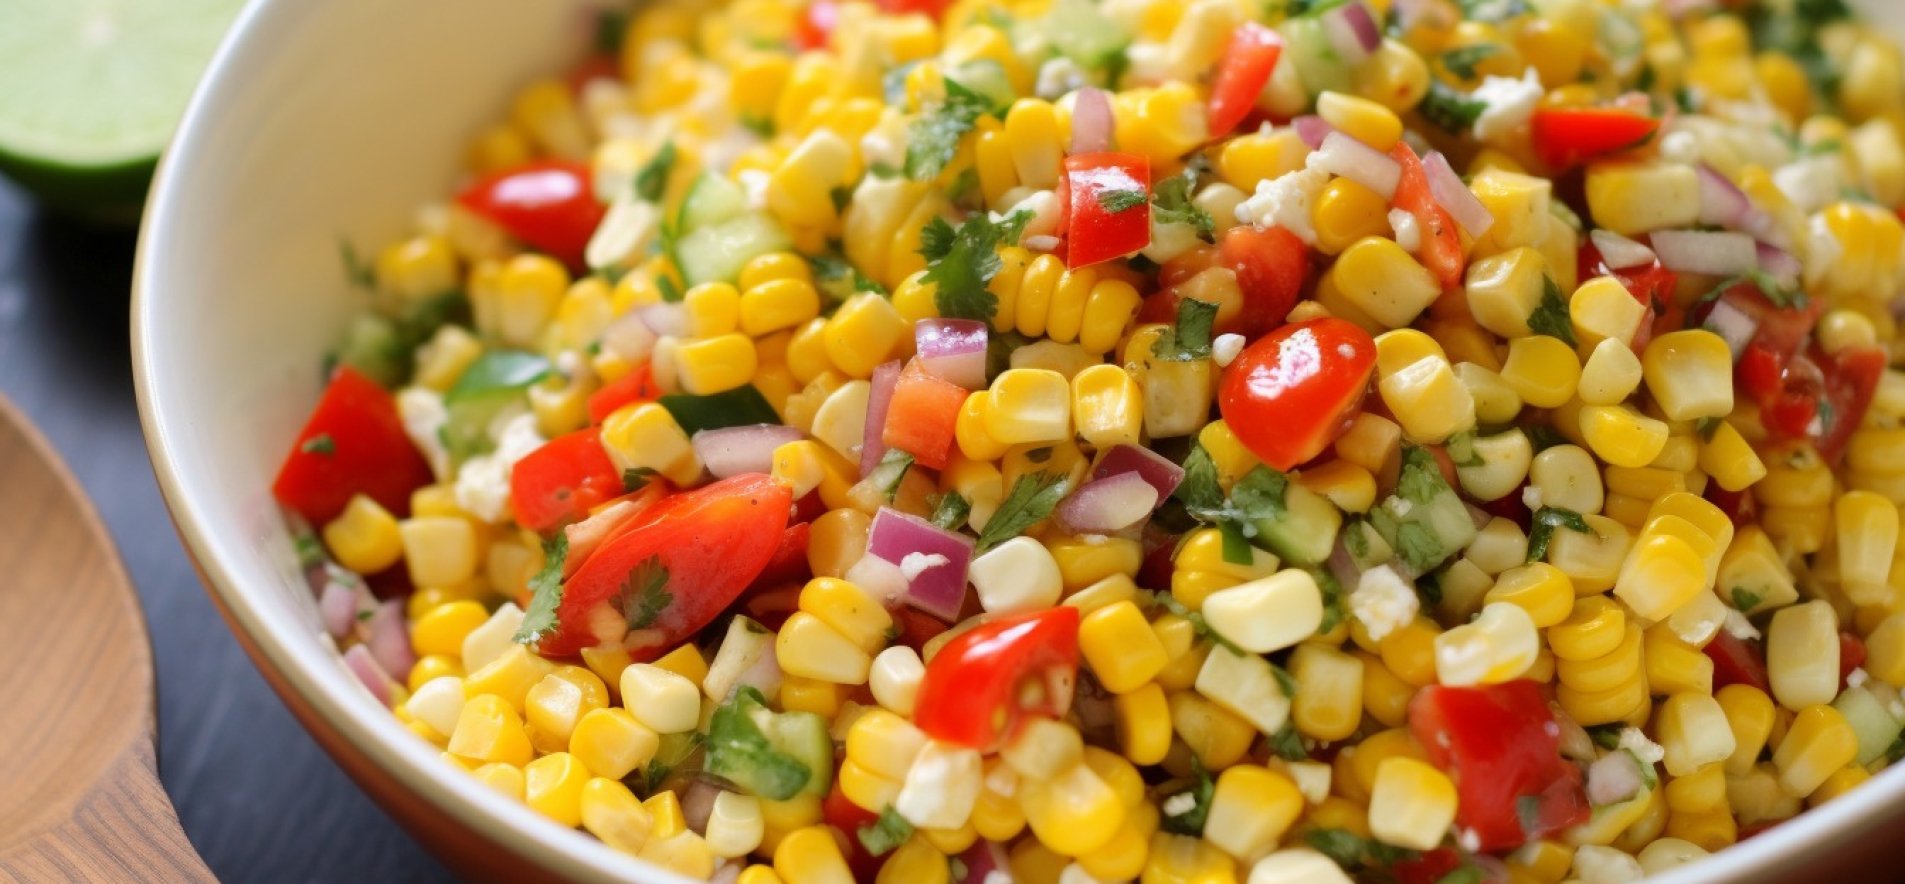 літній салат із кукурудзи та овочів